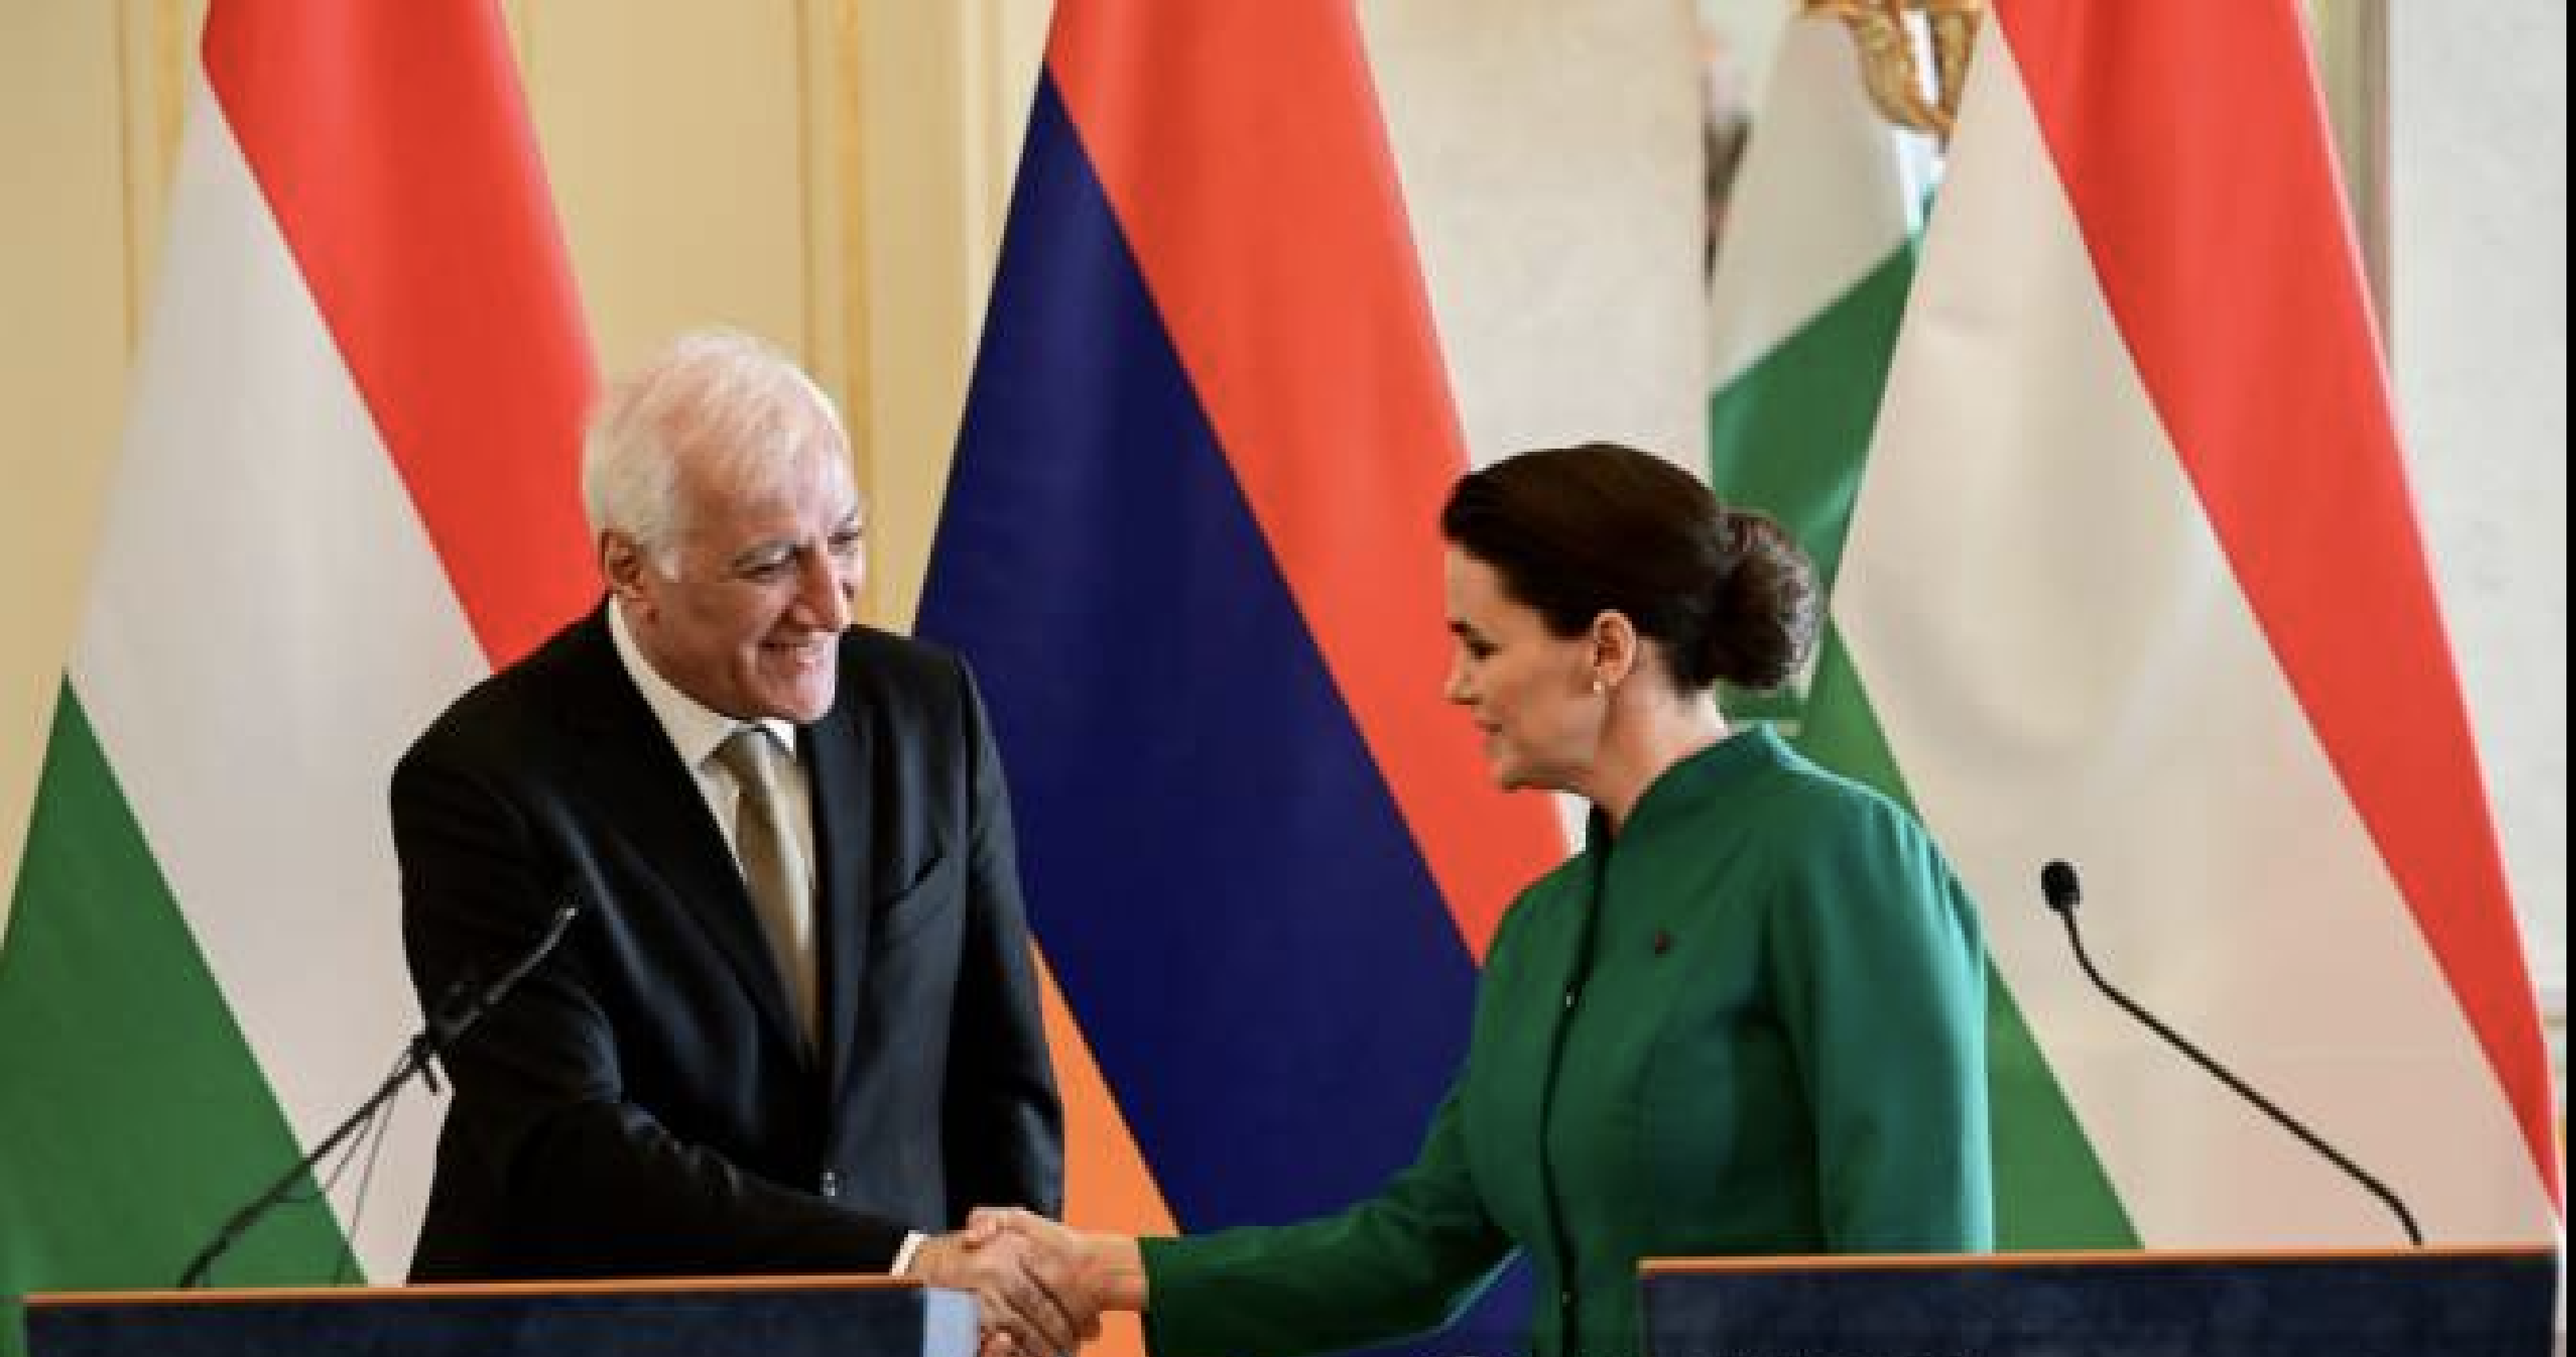 Հայաստանի նախագահն ամրապնդում է կապերը Հունգարիայի հետ